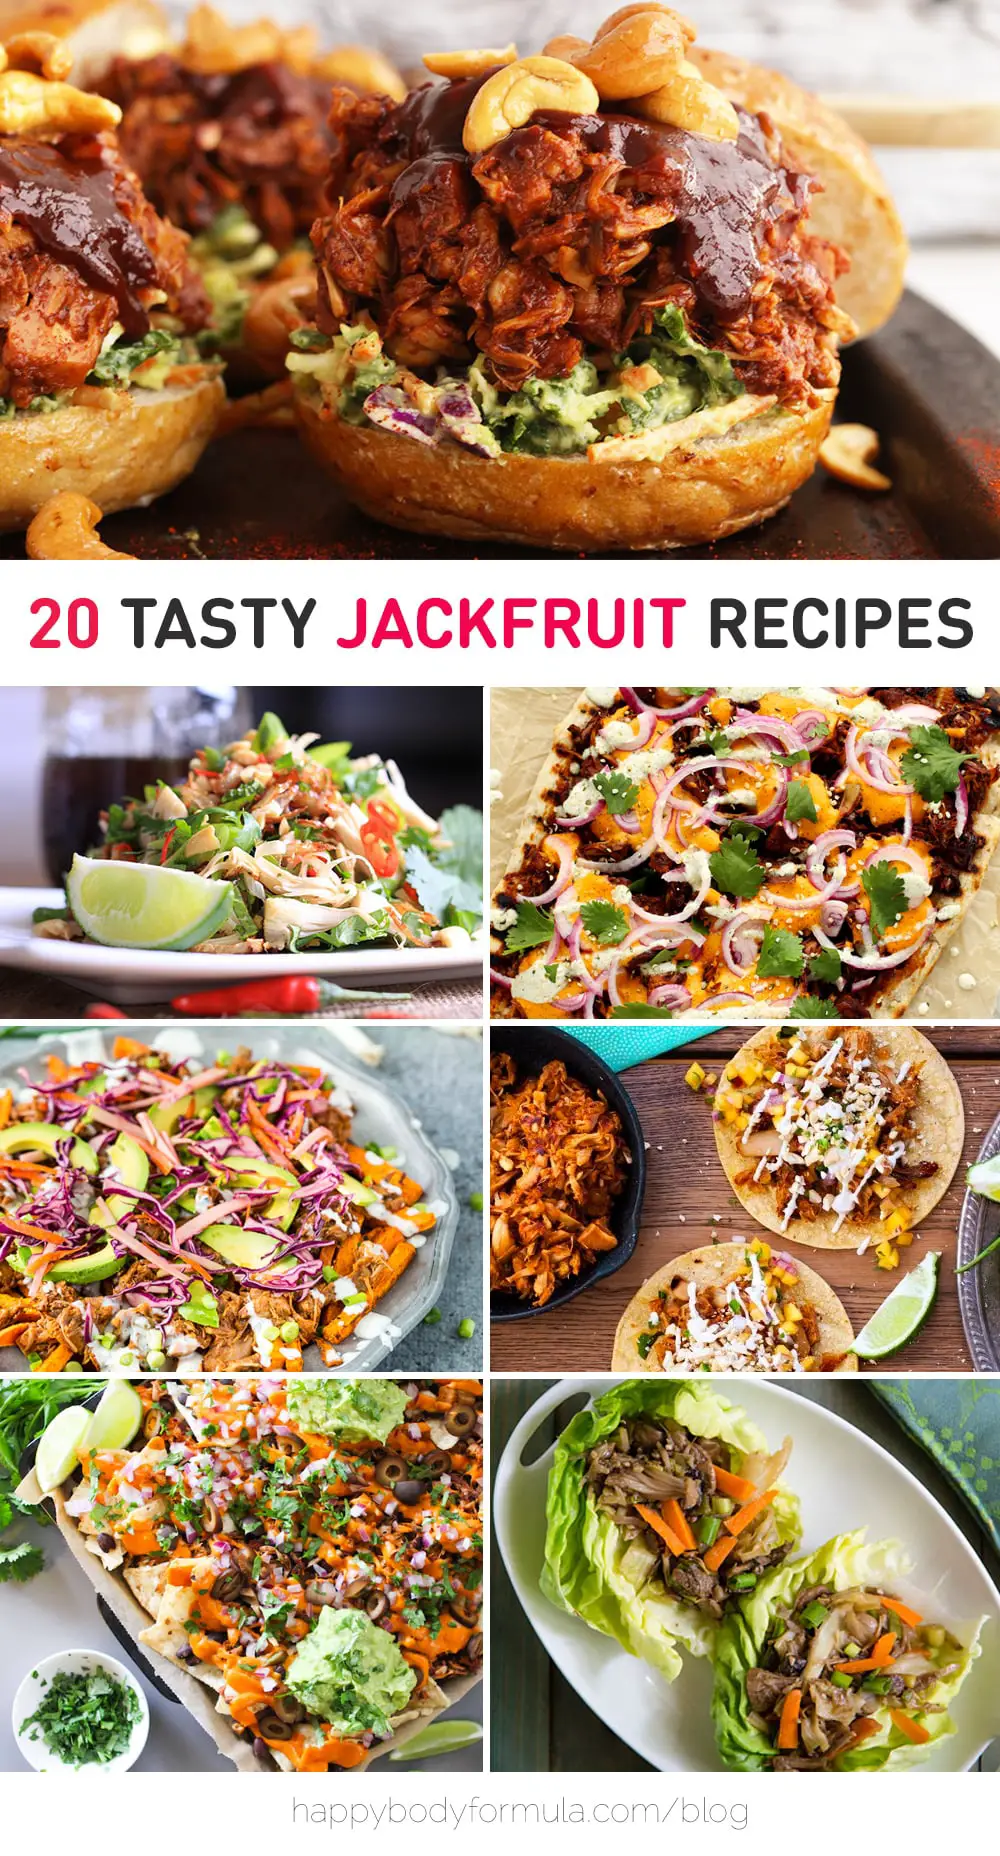 20 Tasty Jackfruit Recipes & Ideas - Happy Body Formula